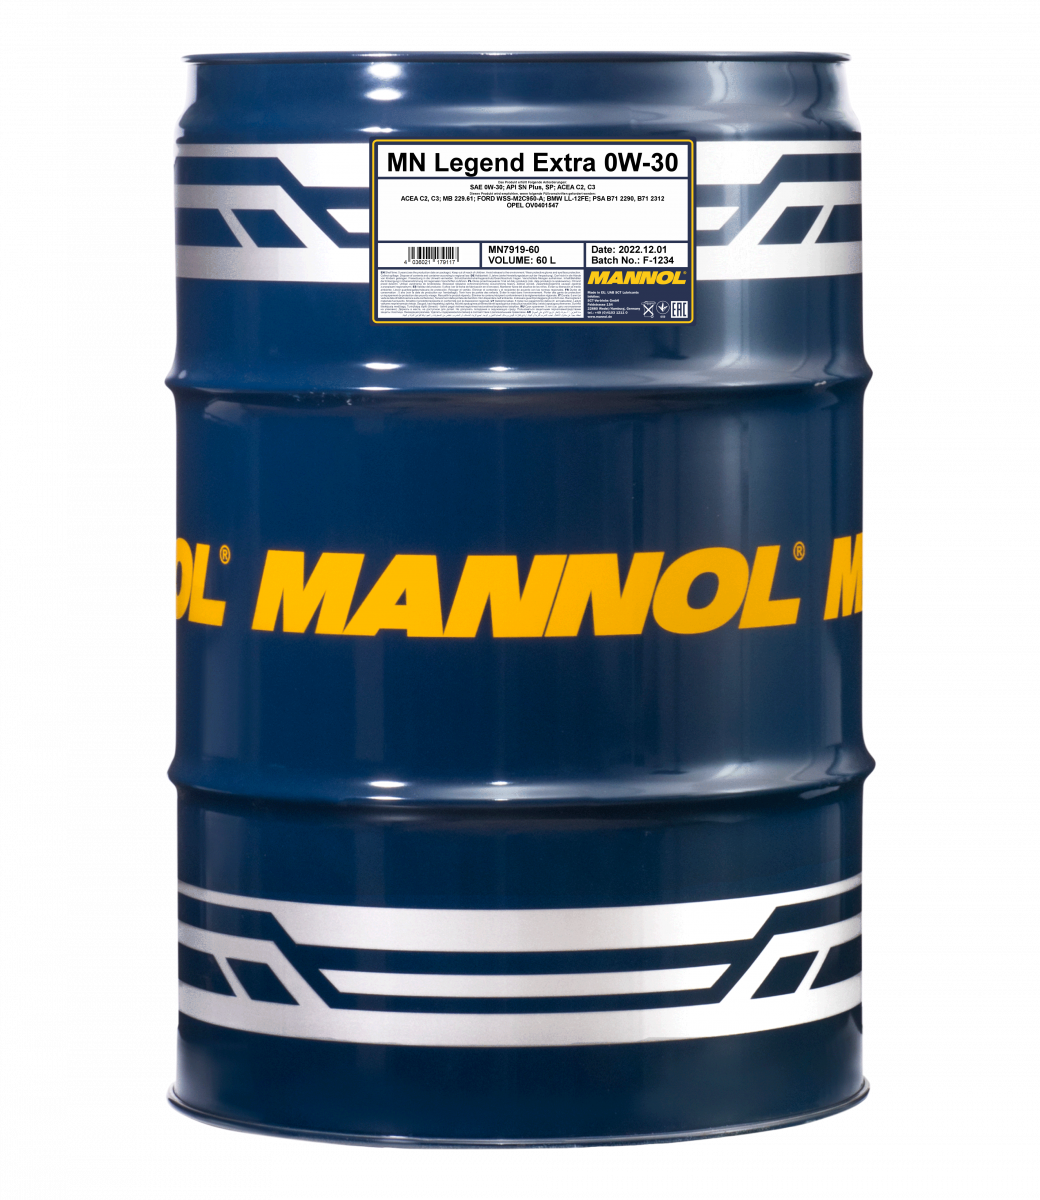 0W-30 Mannol 7919 Legend Extra Motoröl 60 Liter